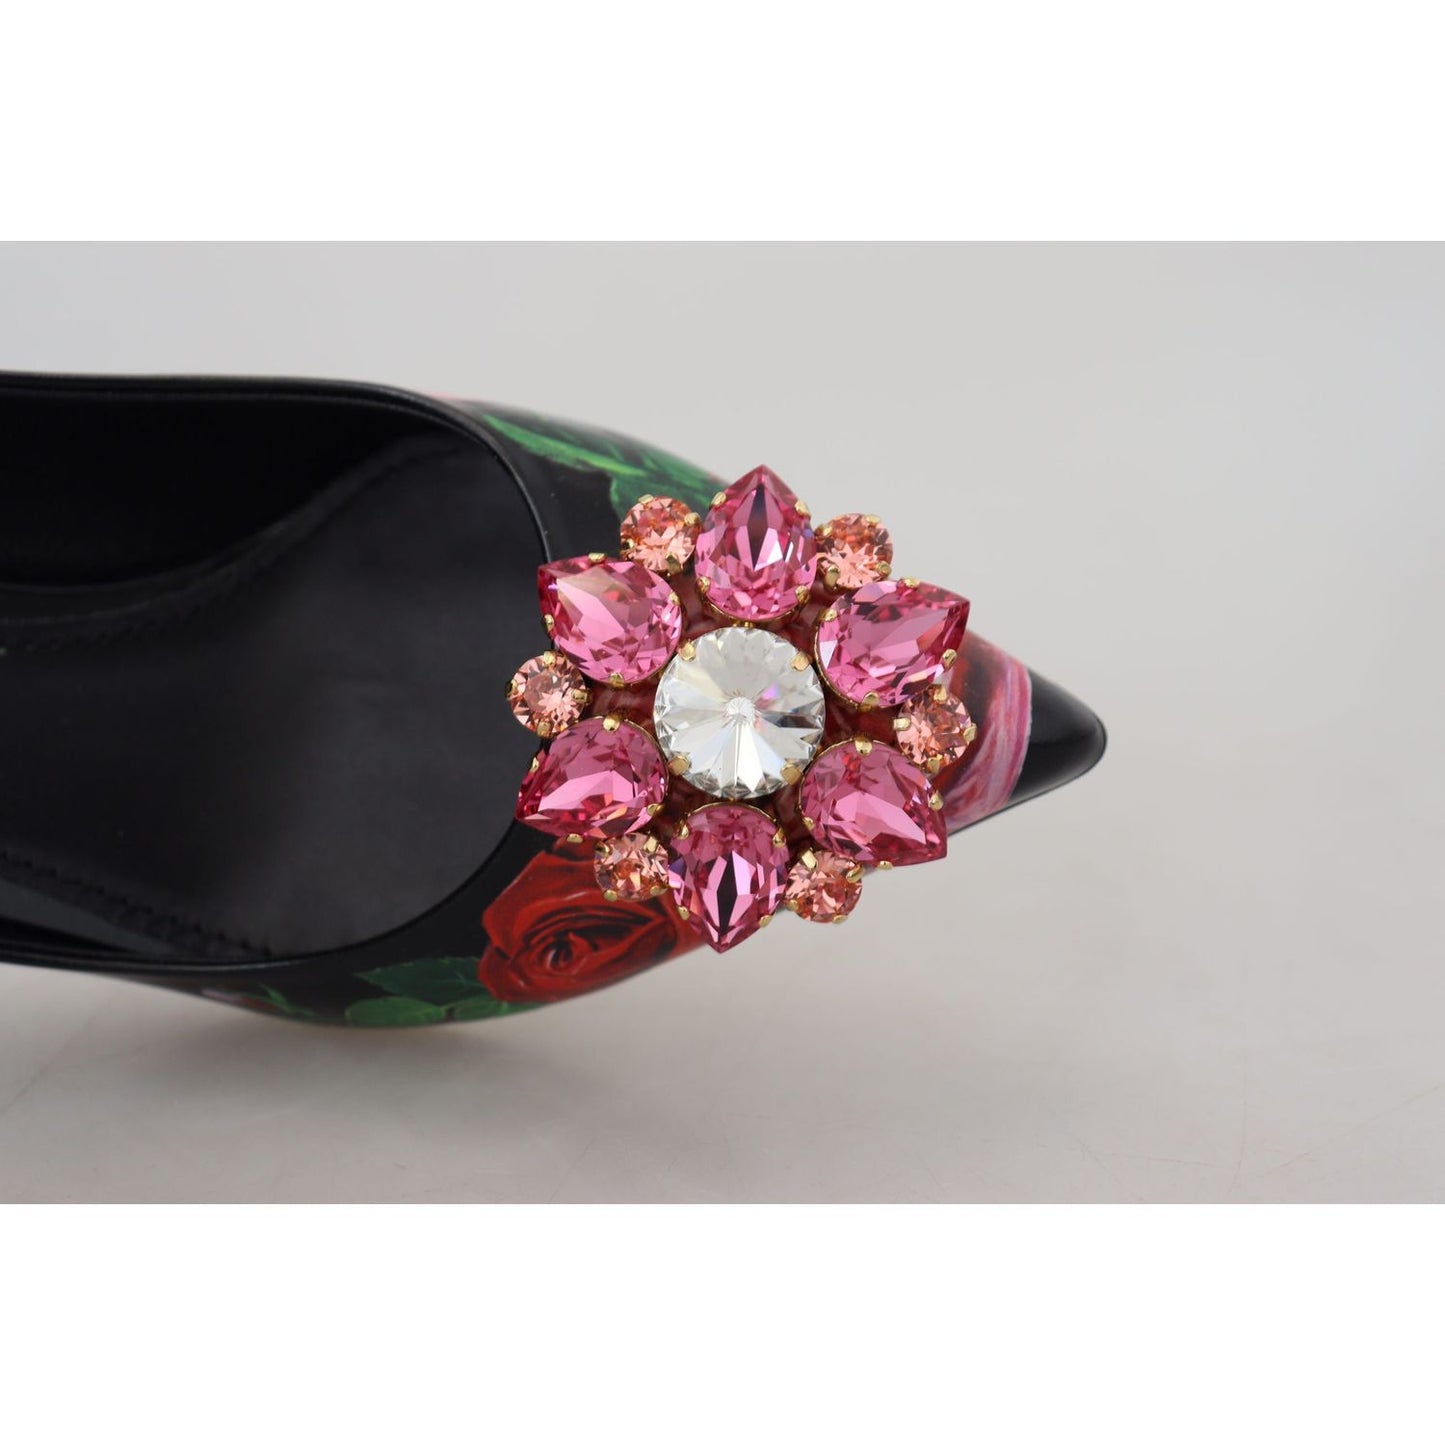 Dolce & Gabbana Elegant Floral Crystal Pumps black-floral-print-crystal-heels-pumps-shoes